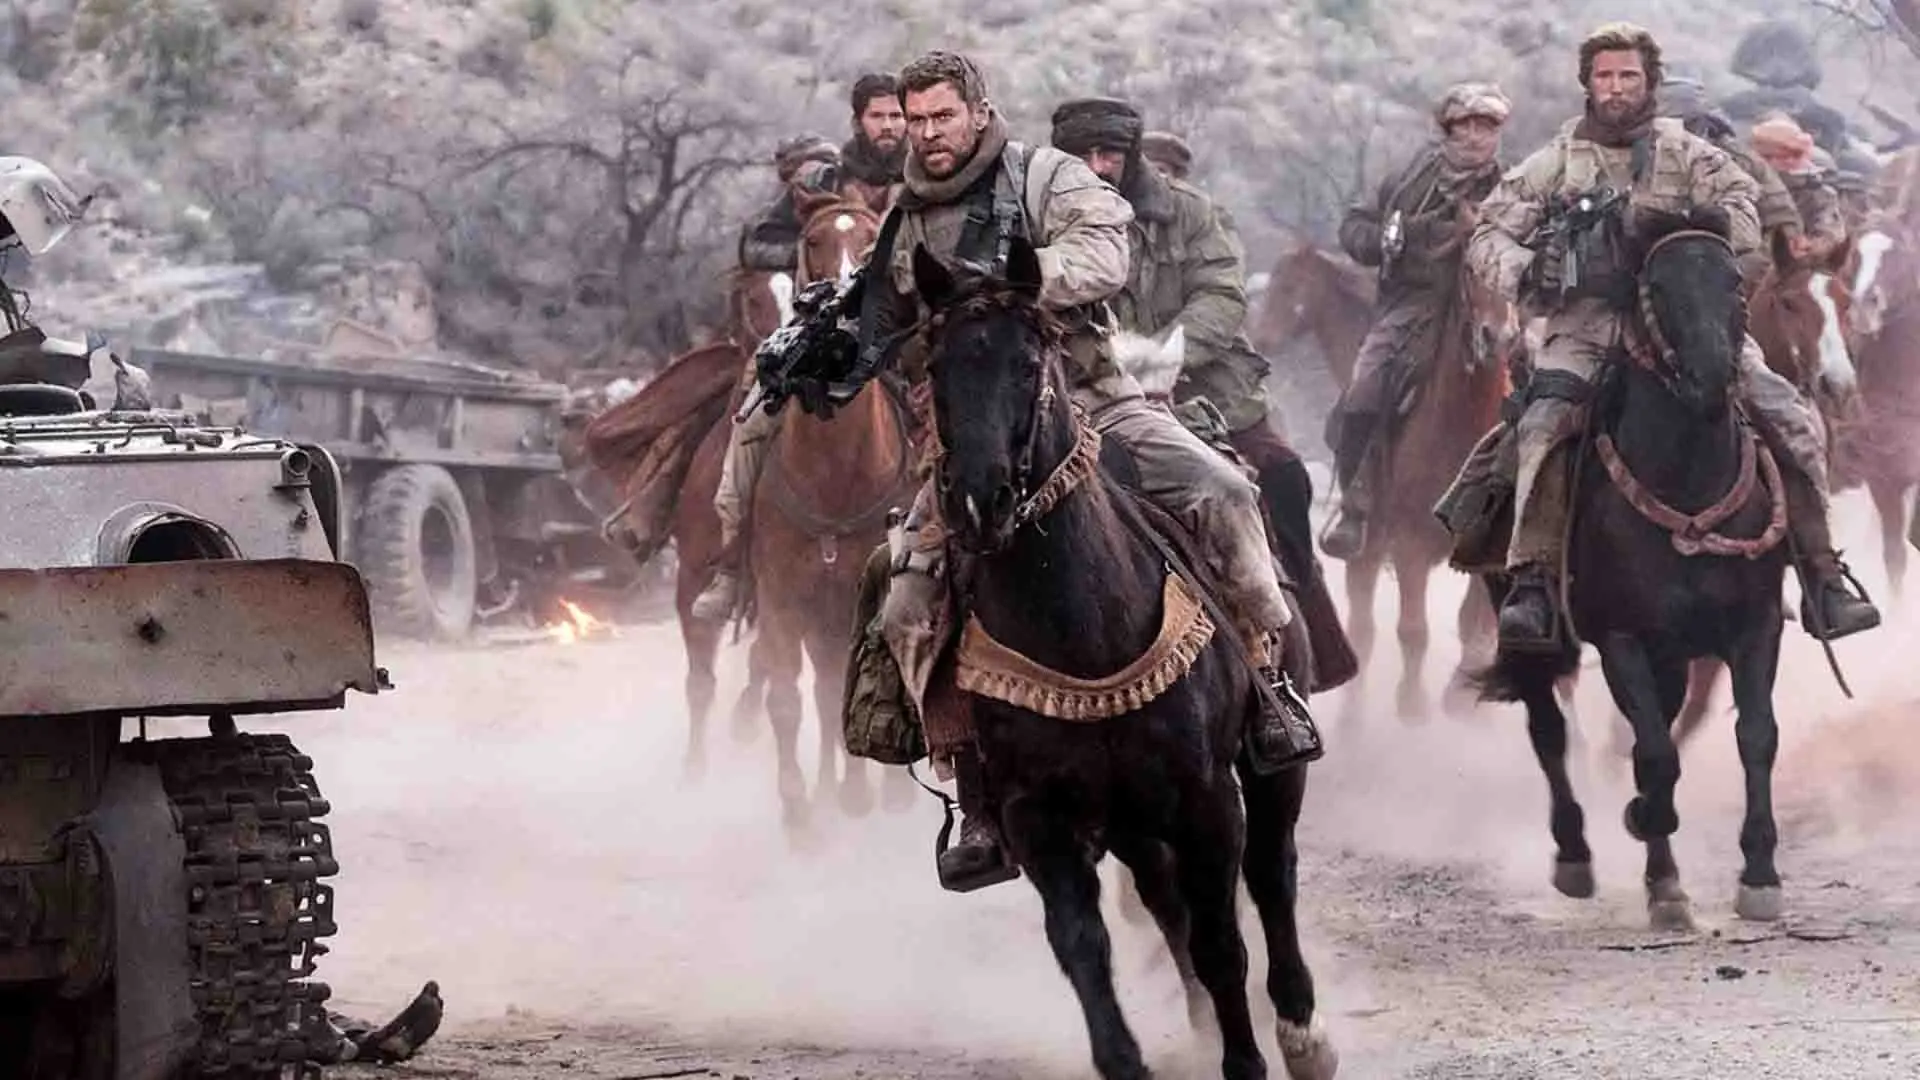 کریس همسورث به همراه دیگر سربازان روی اسب در فیلم 12 Strong